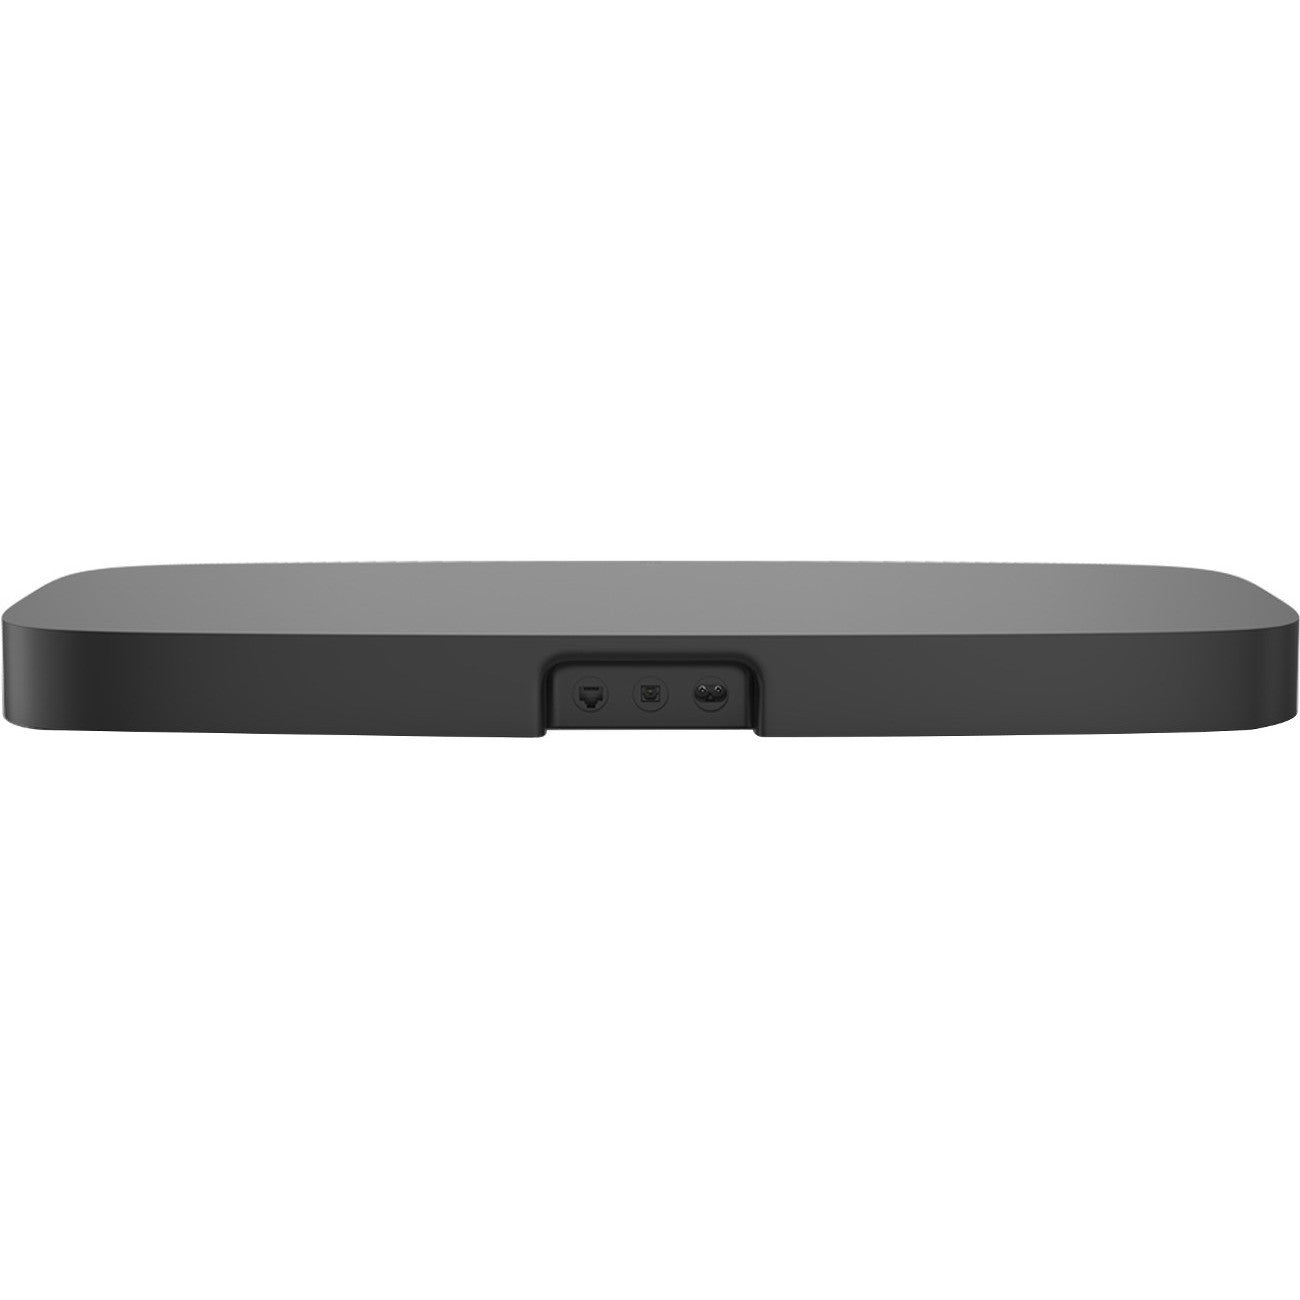 Sonos Playbase (Black) - Back View